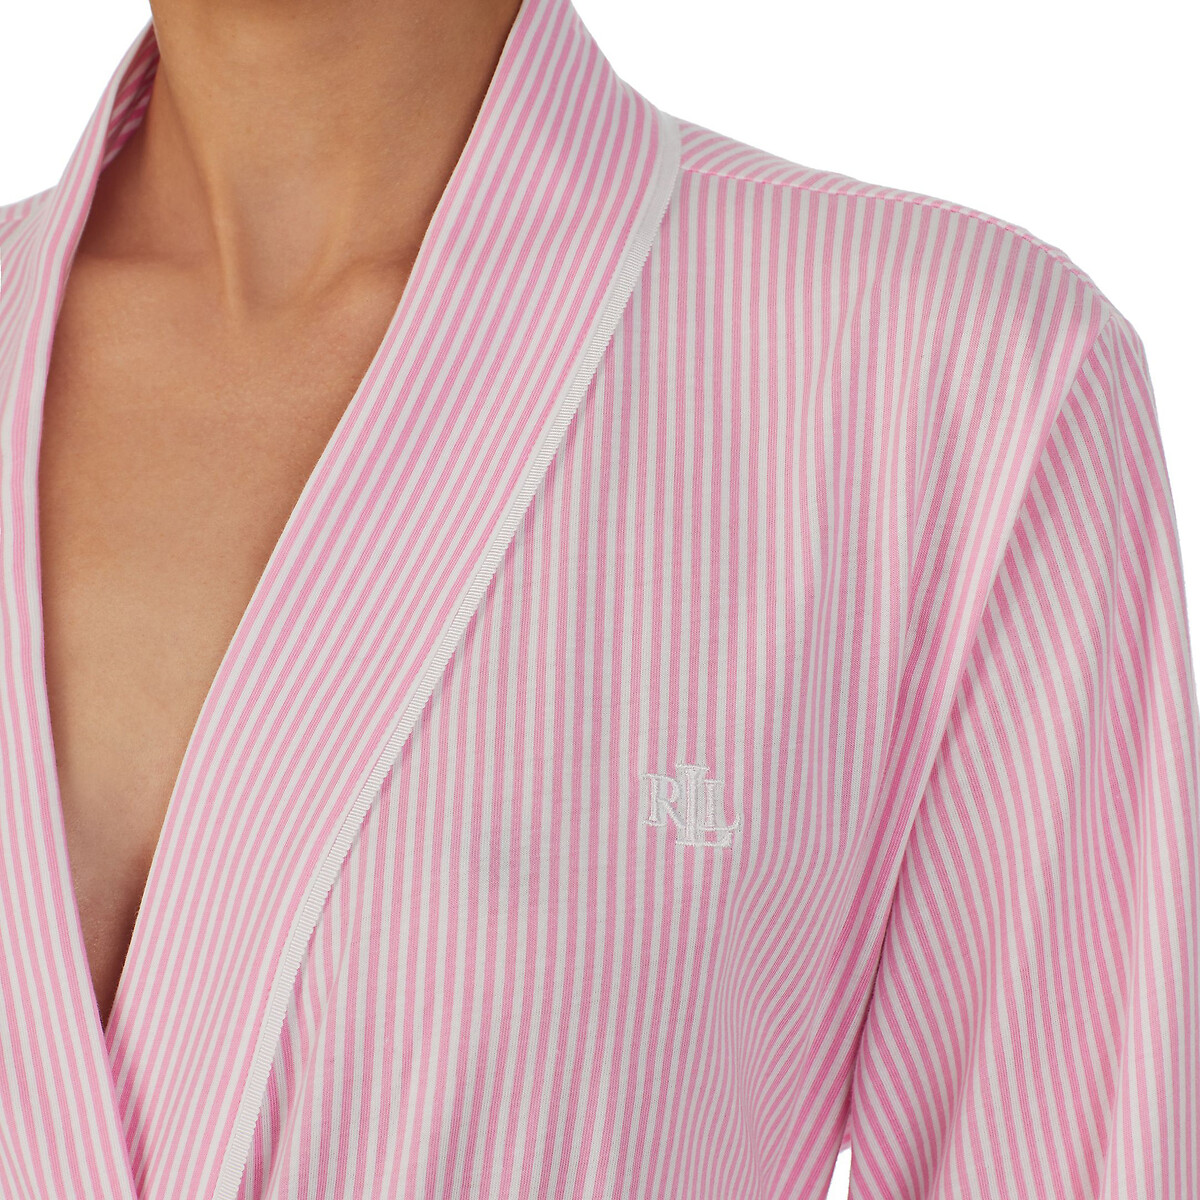 Халат Из хлопка с завязками XL розовый LaRedoute, размер XL - фото 4